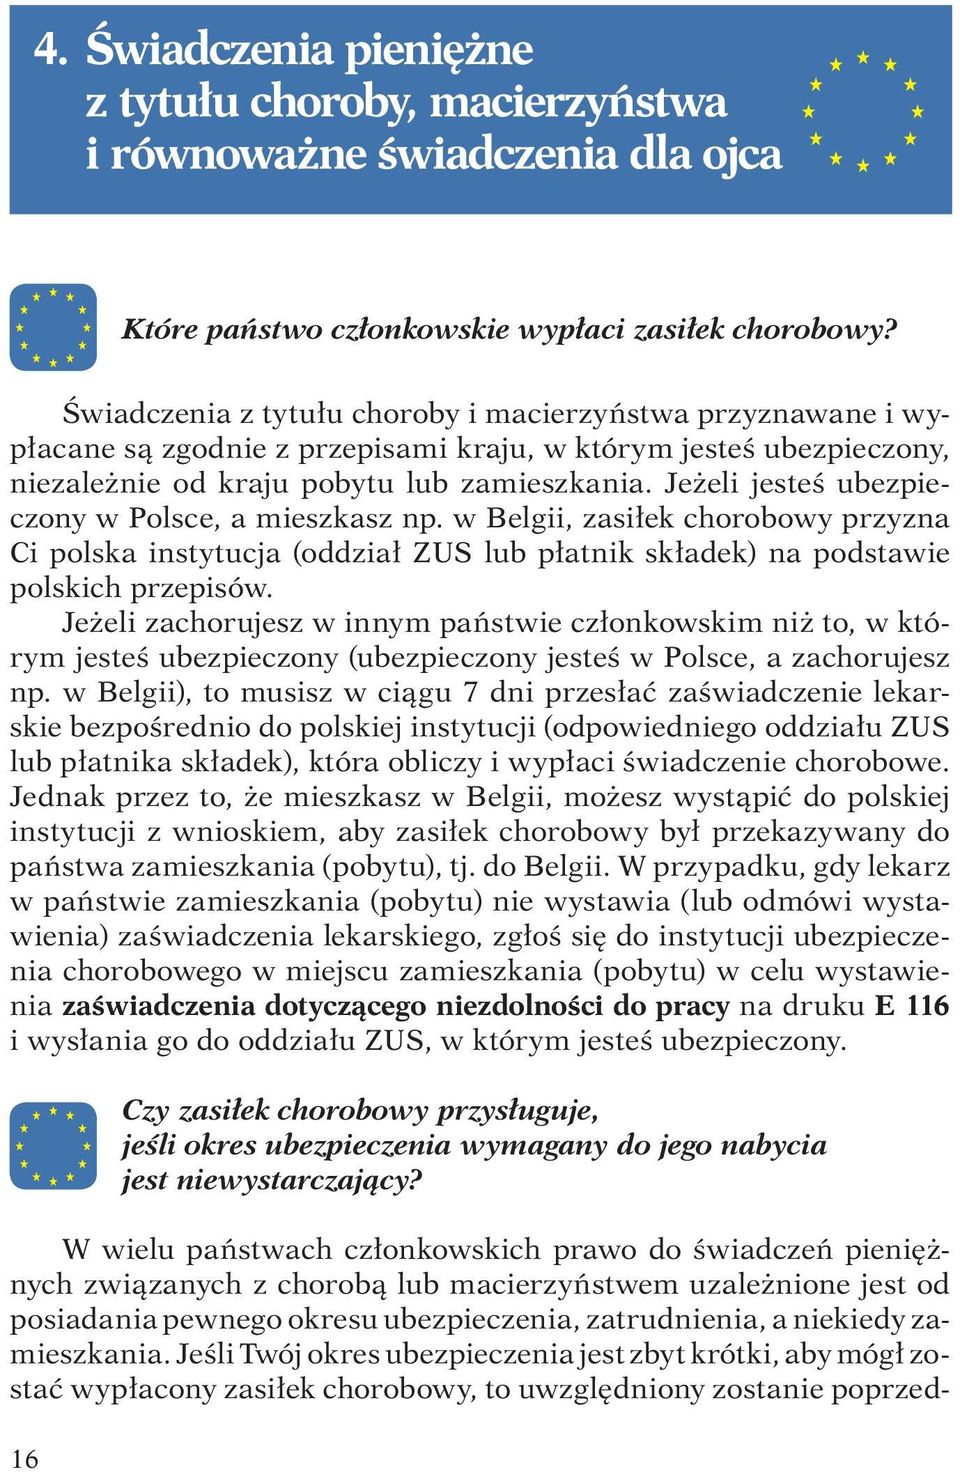 Jeżeli jesteś ubezpieczony w Polsce, a mieszkasz np. w Belgii, zasiłek chorobowy przyzna Ci polska instytucja (oddział ZUS lub płatnik składek) na podstawie polskich przepisów.